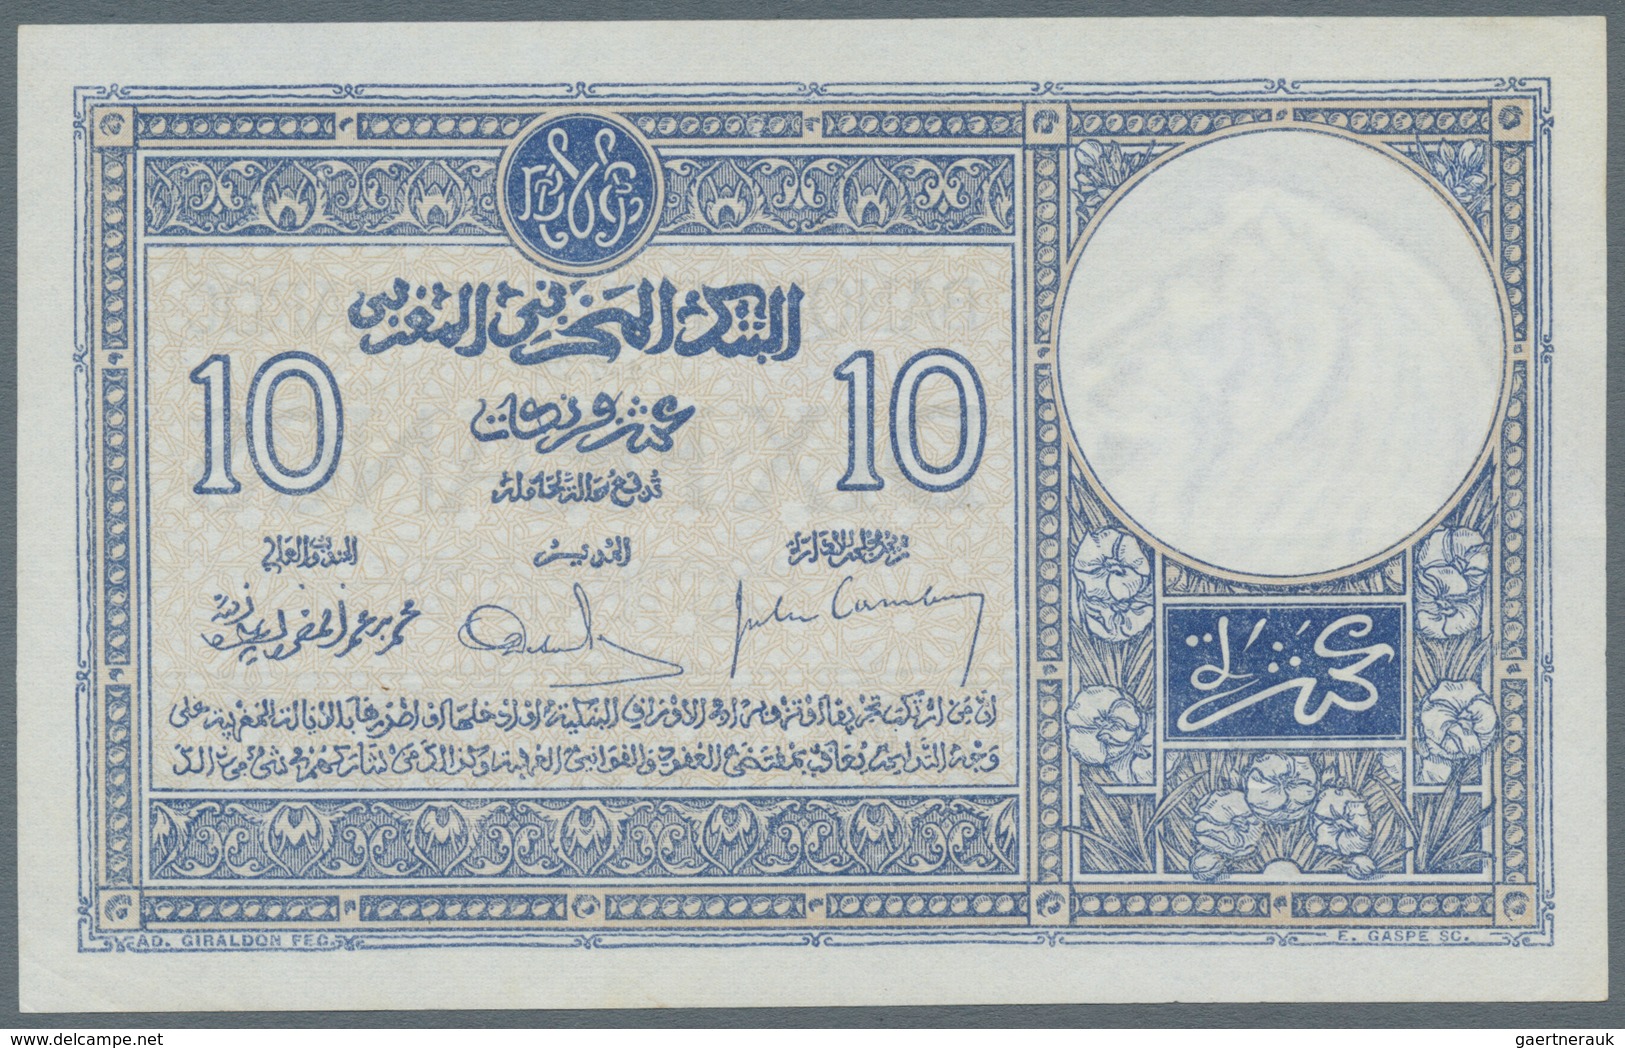 Morocco / Marokko: 10 Francs 1928 P. 11, In Condition: AUNC. - Marokko